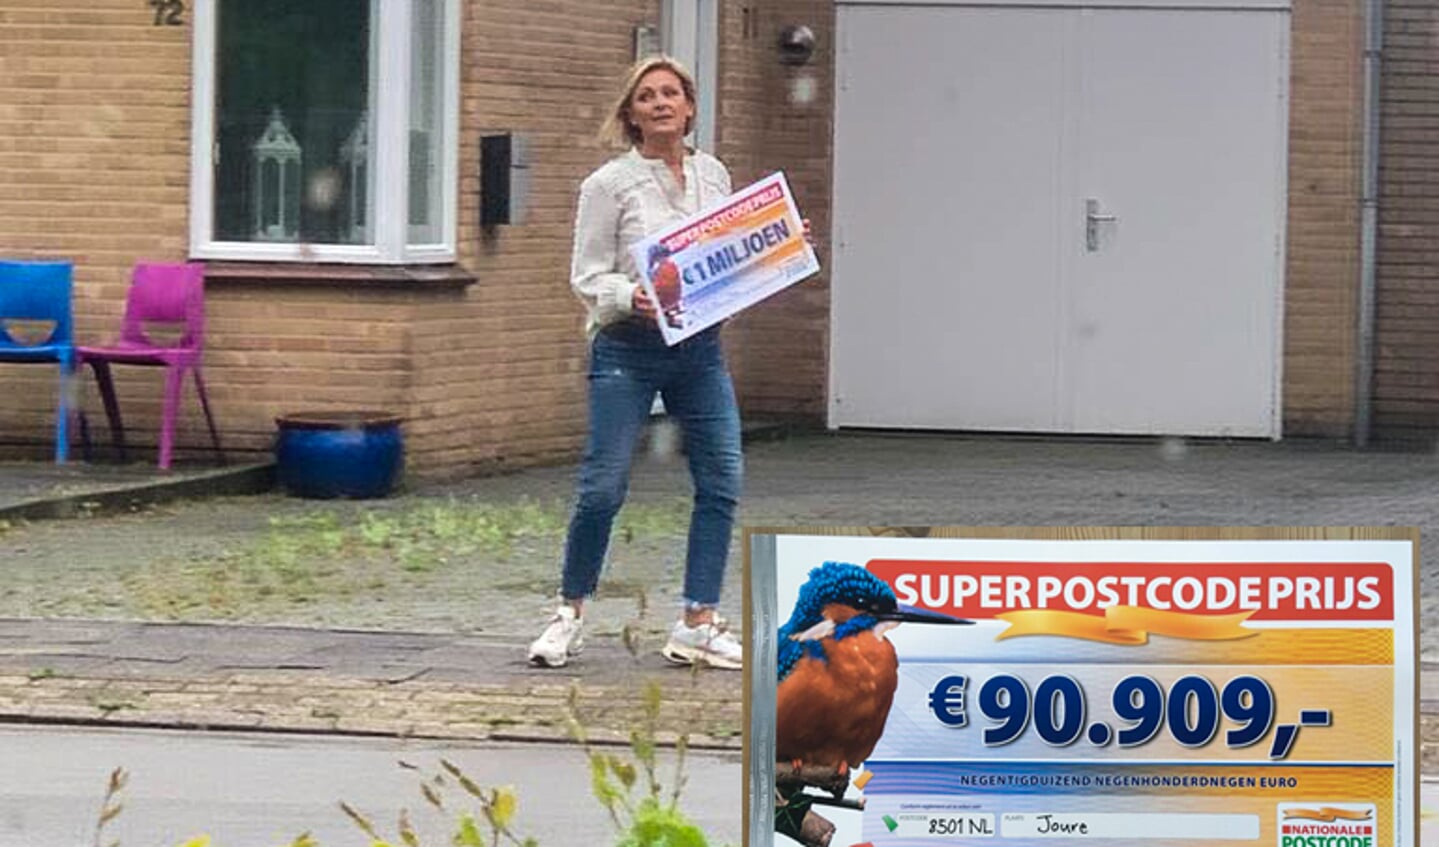 Caroline Tensen met de cheque van 1 miljoen euro